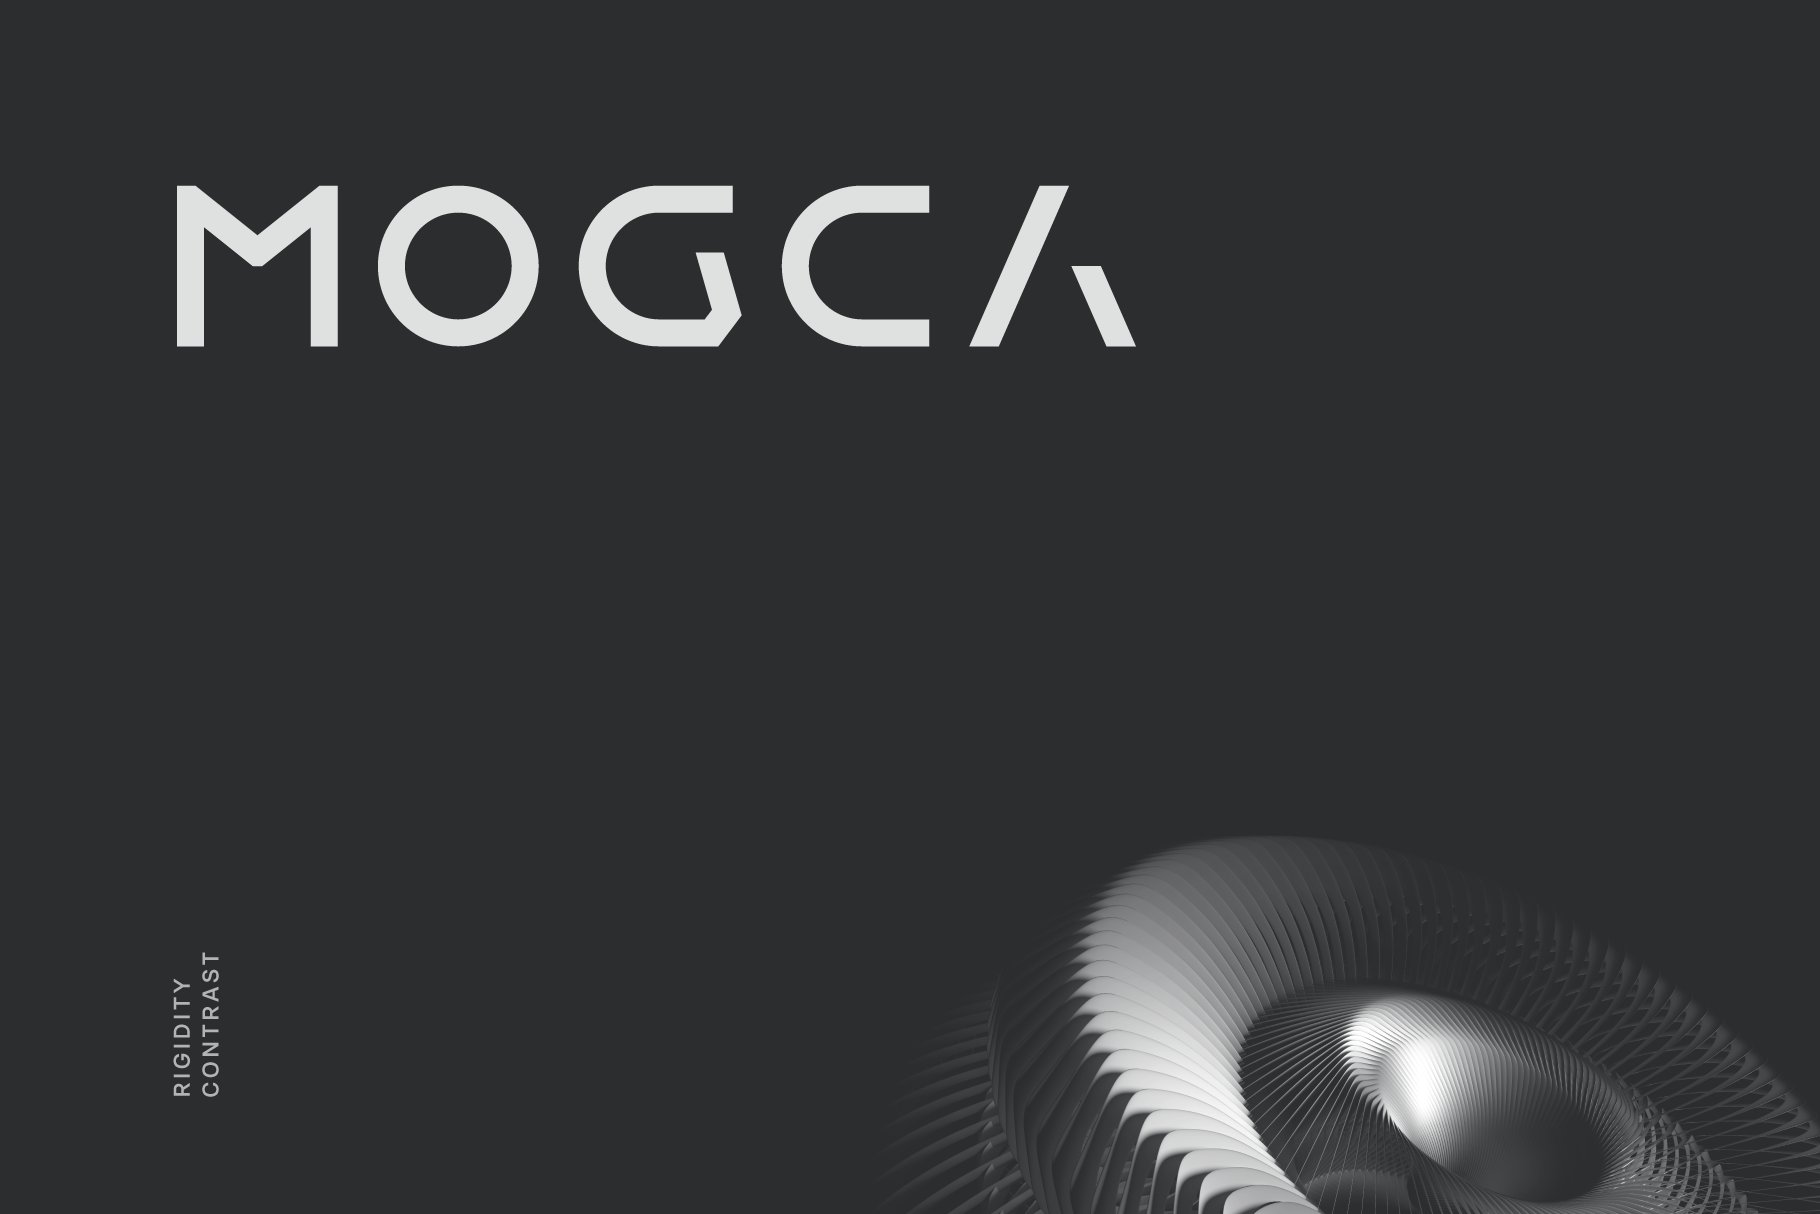 Mogca Futuristic Tech Font cover image.